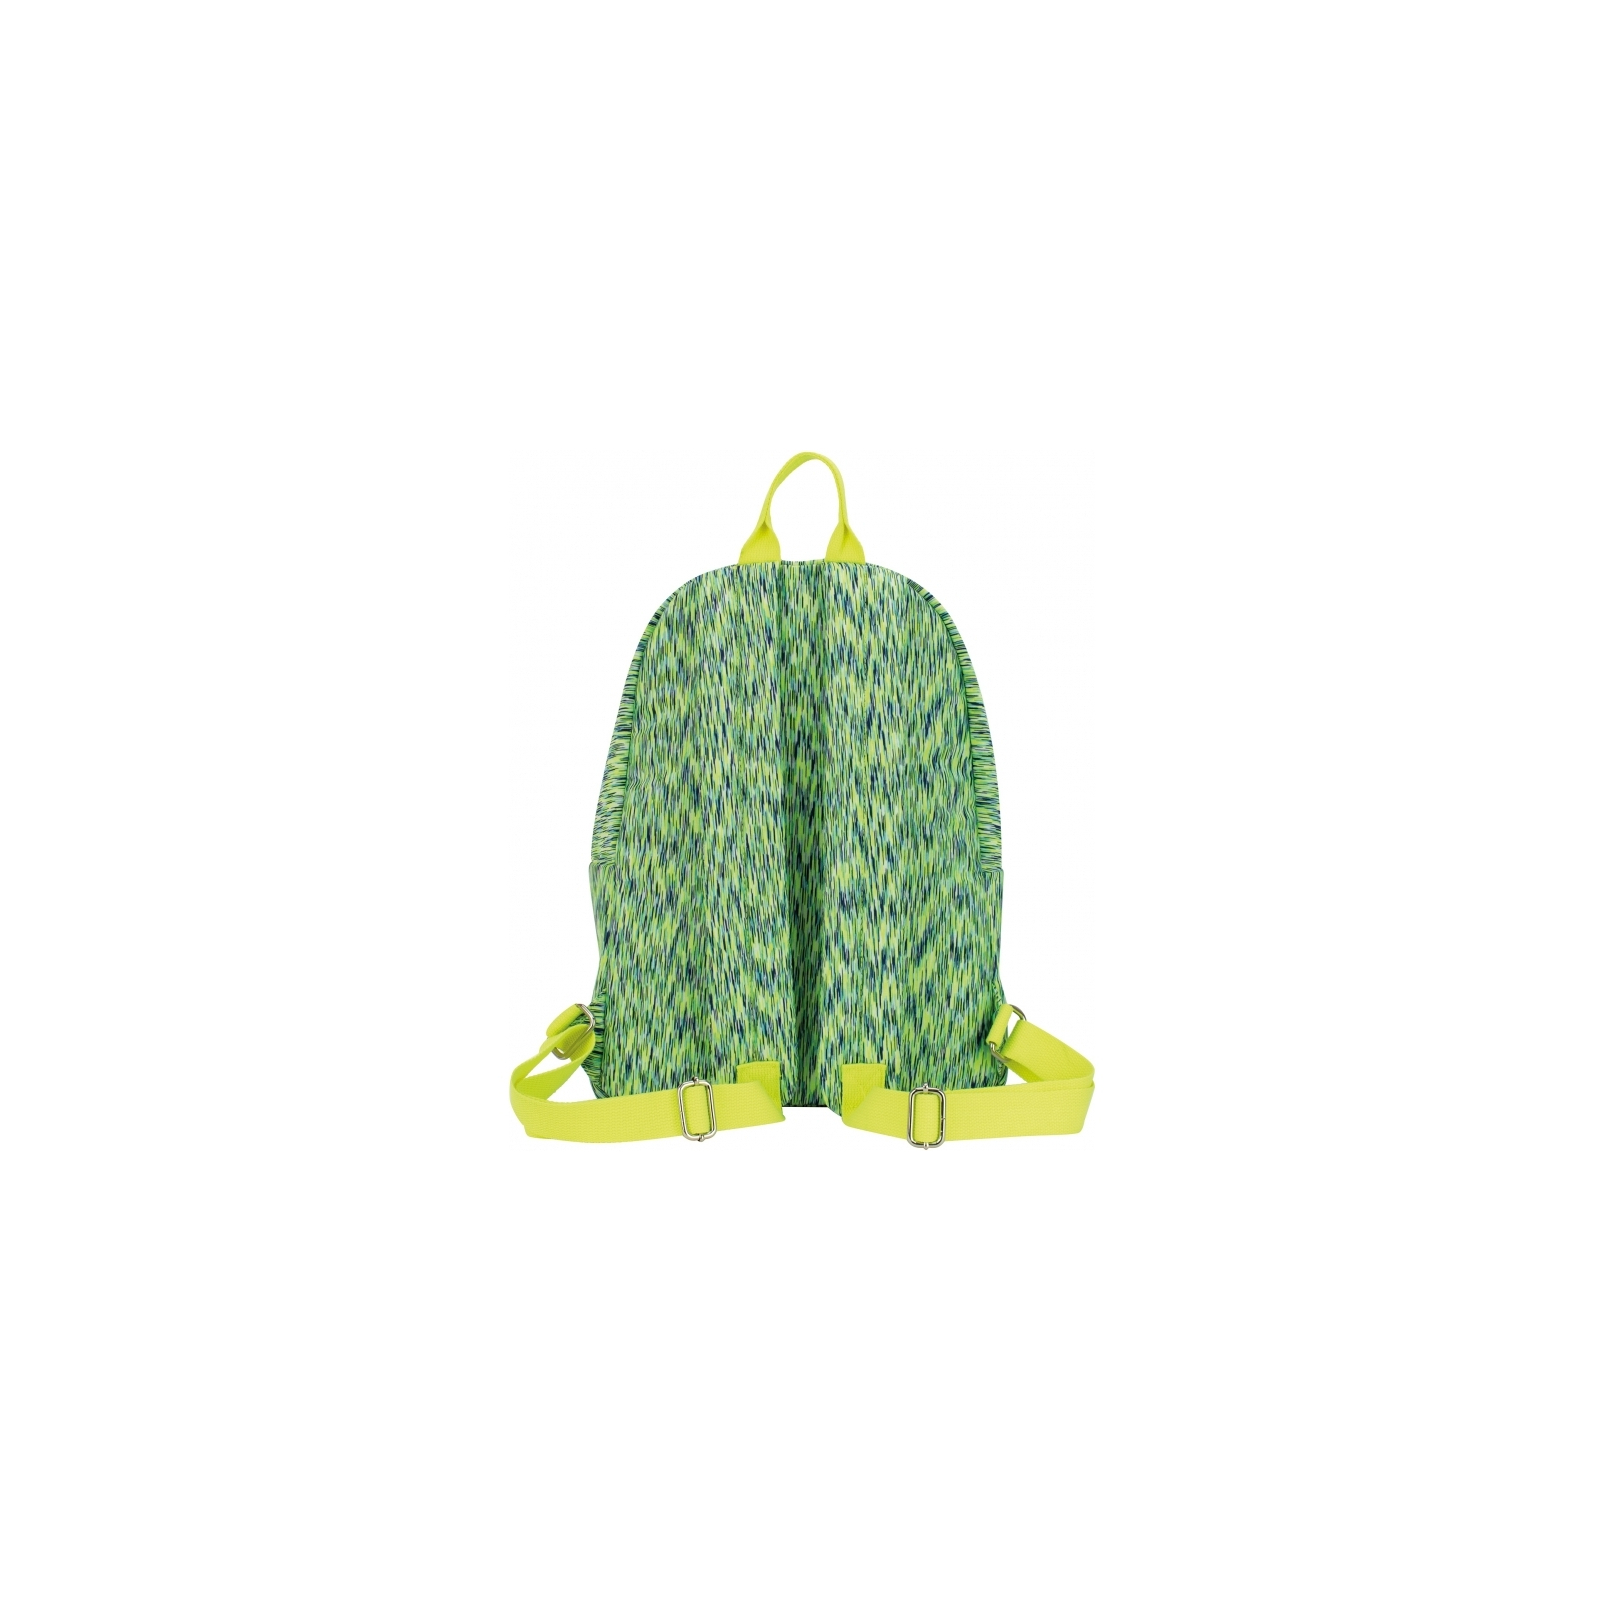 Рюкзак шкільний Cool For School 42*30*16 см персиковий (CF86270) зображення 2